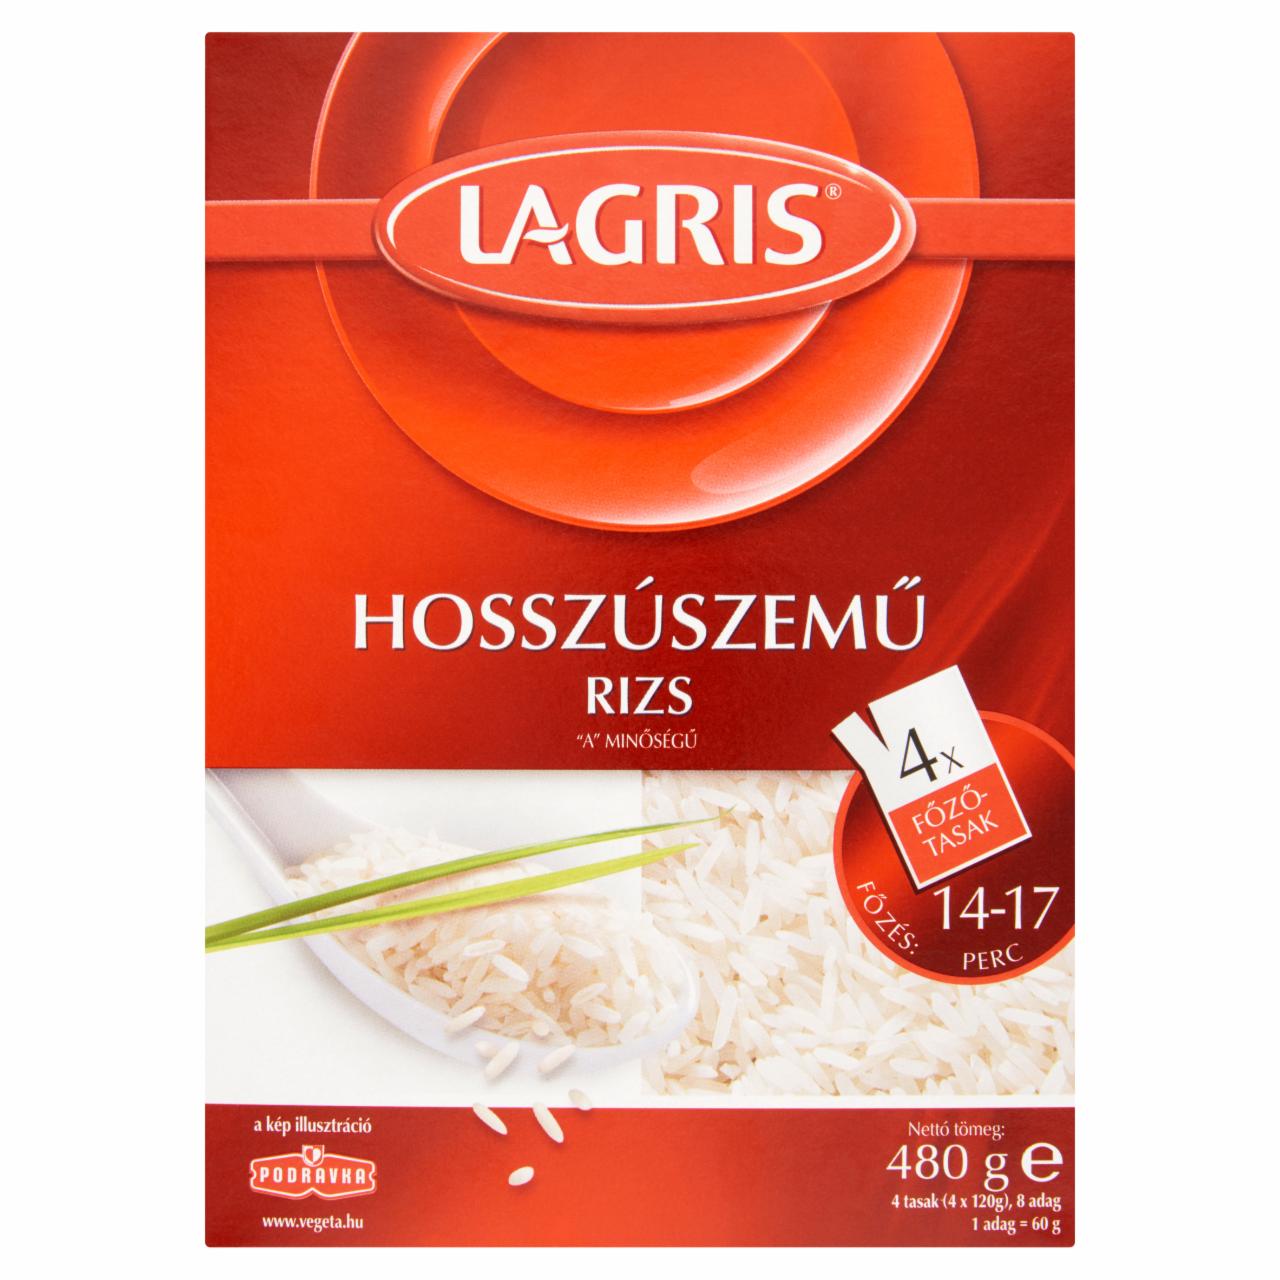 Képek - Lagris hosszúszemű rizs főzőtasakban 4 x 120 g